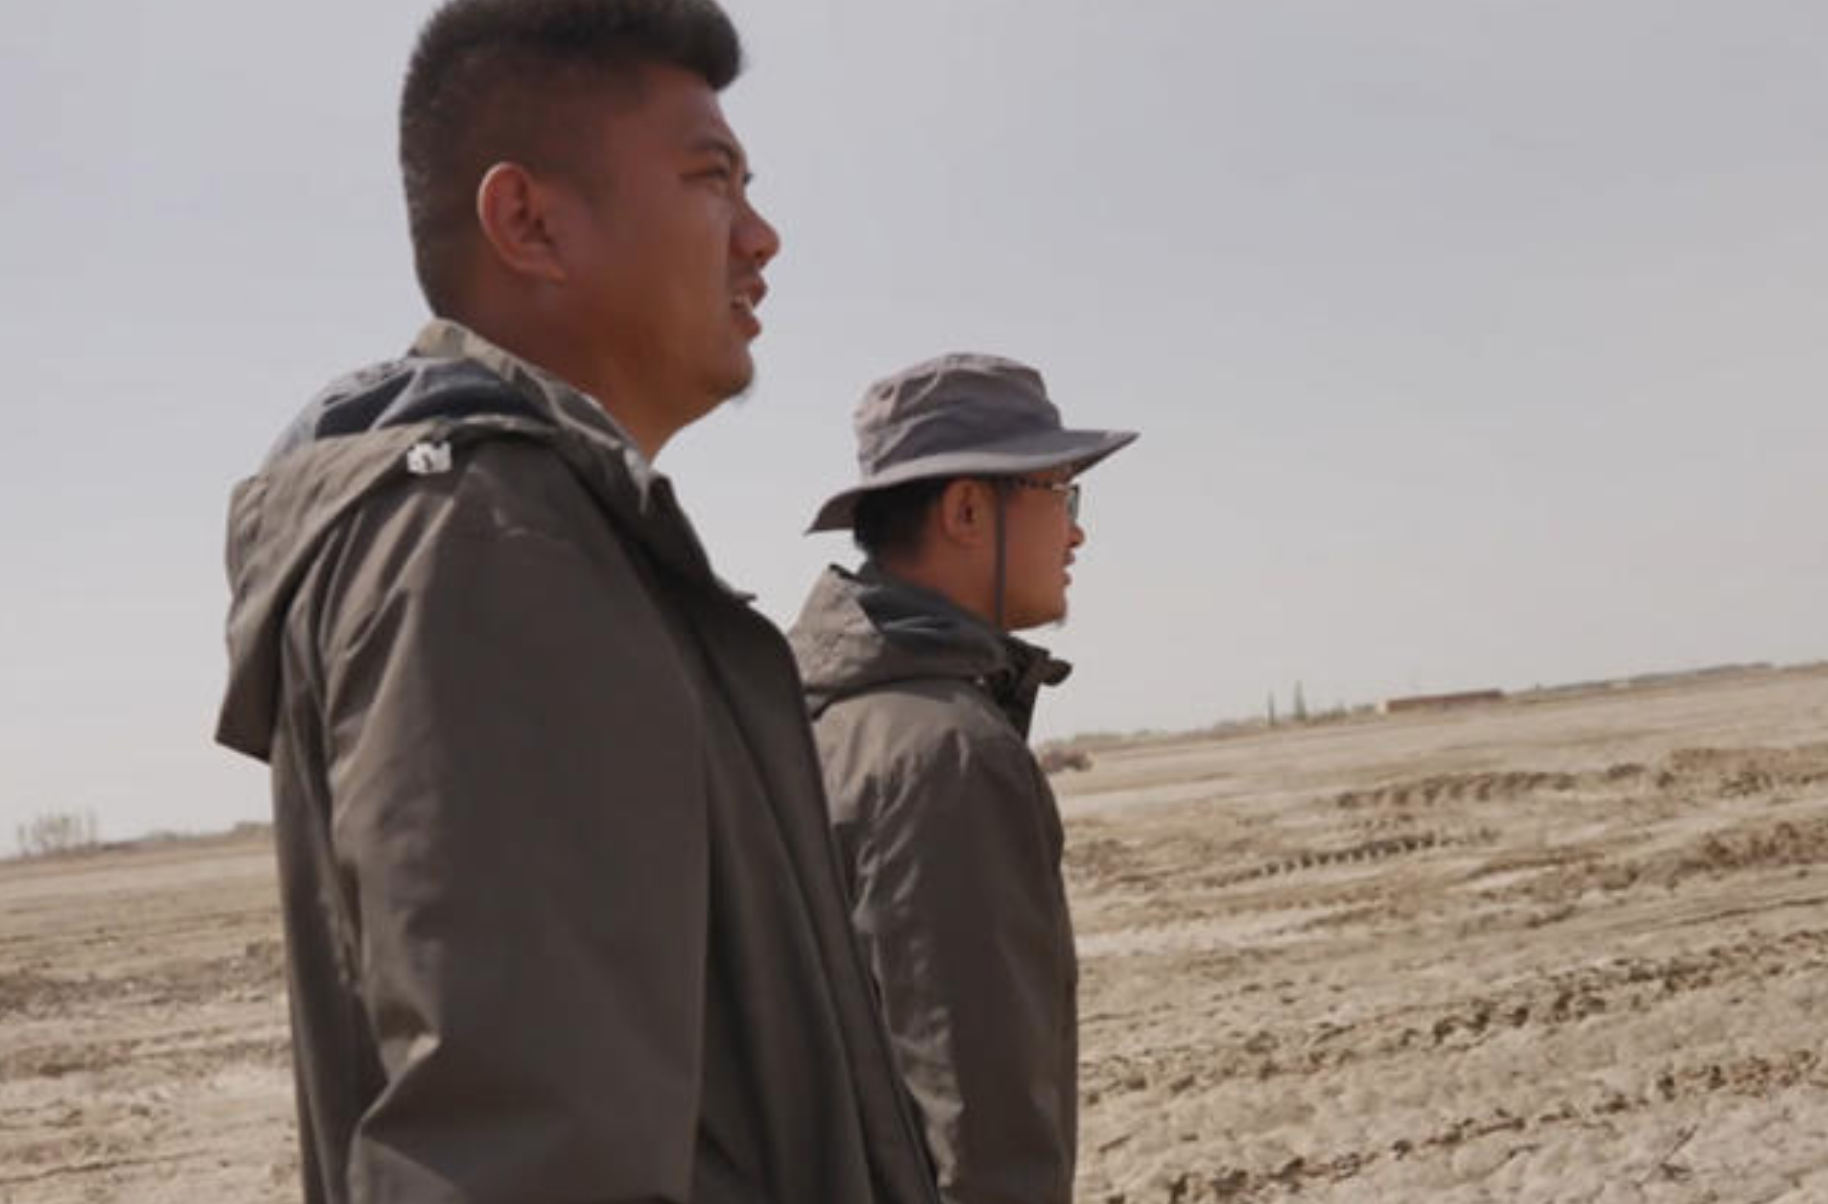 67 2 - Indagini fattuali e voci: non ci sono persone nei campi di cotone dello Xinjiang, due persone devono gestire 3000 acri